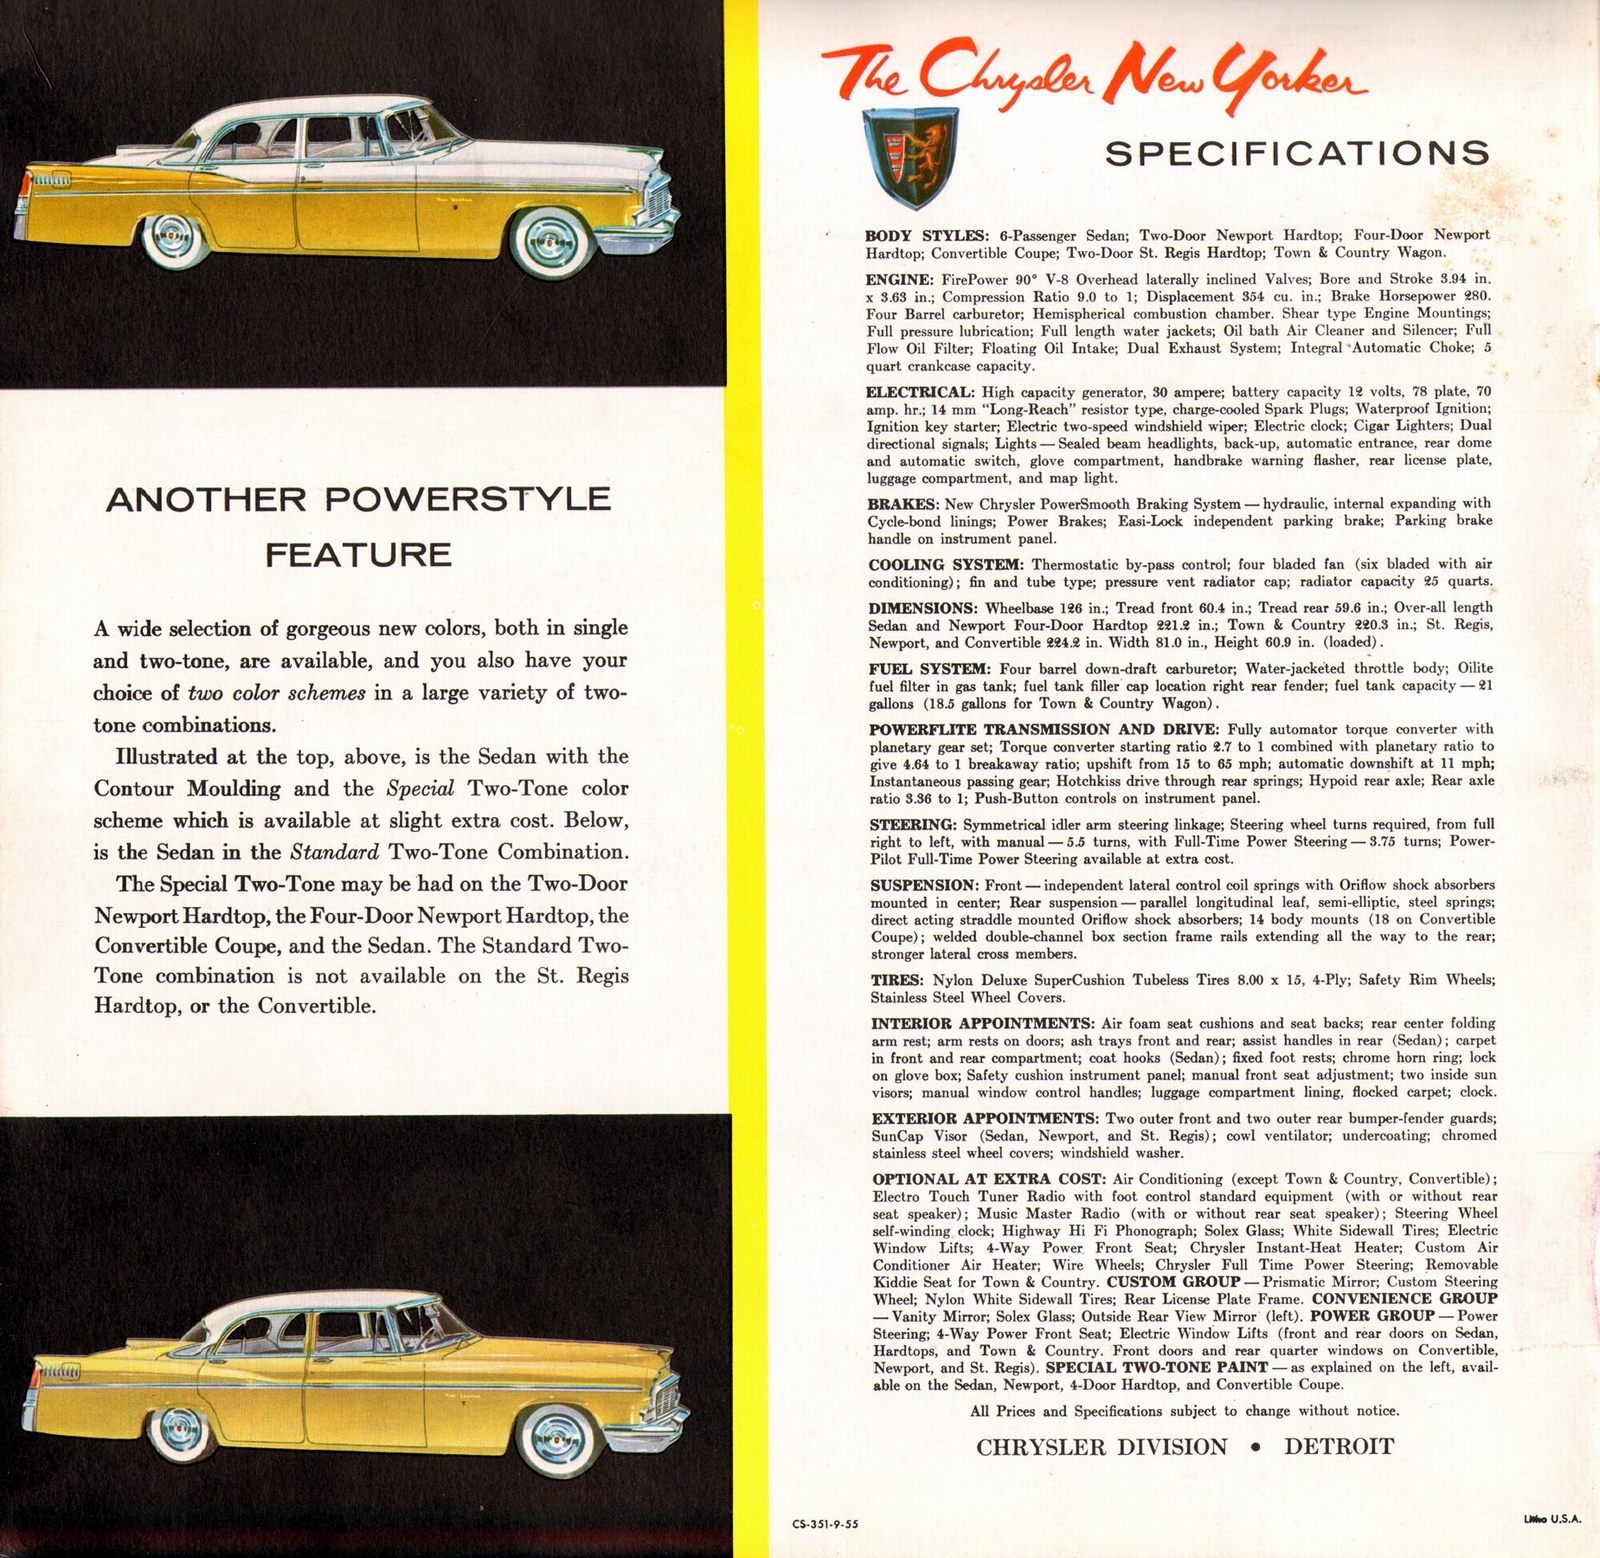 n_1956 Chrysler New Yorker Prestige-16.jpg